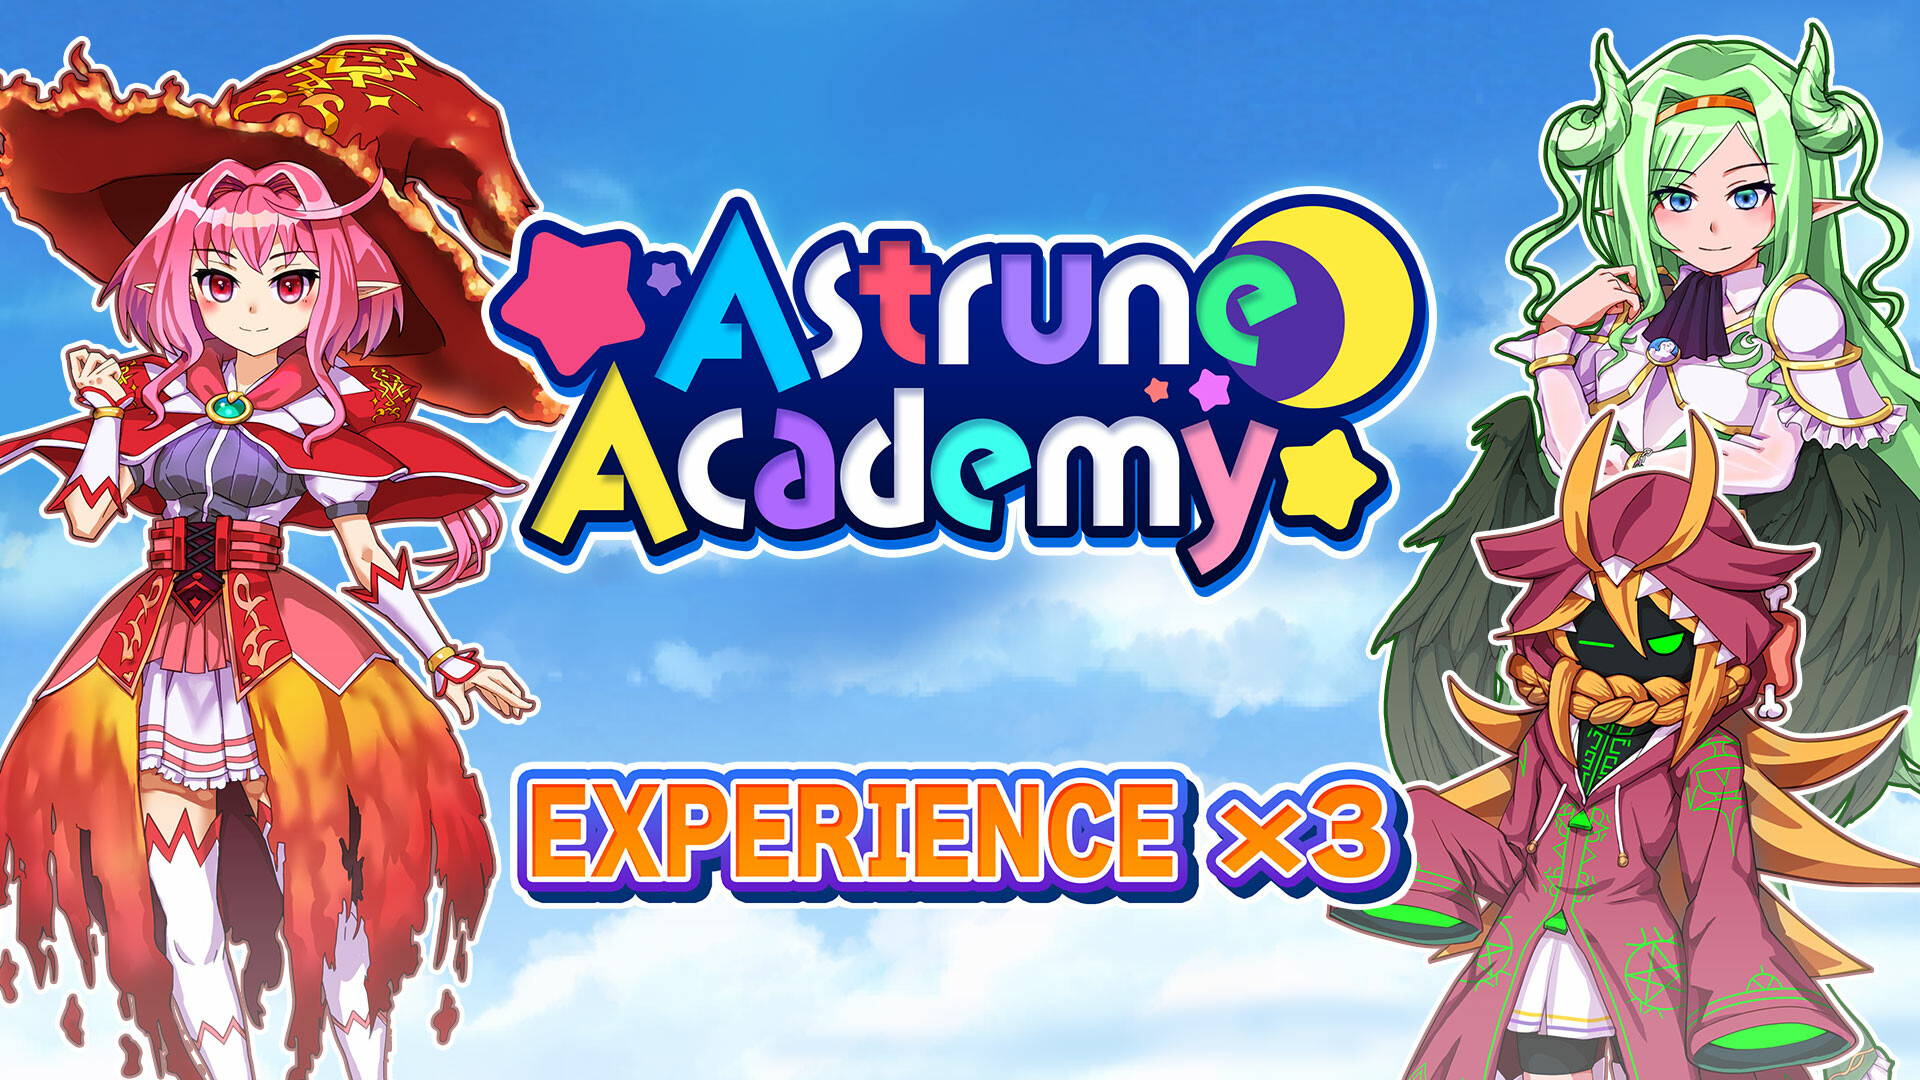 Experience x3 - Astrune Academy Featured Screenshot #1